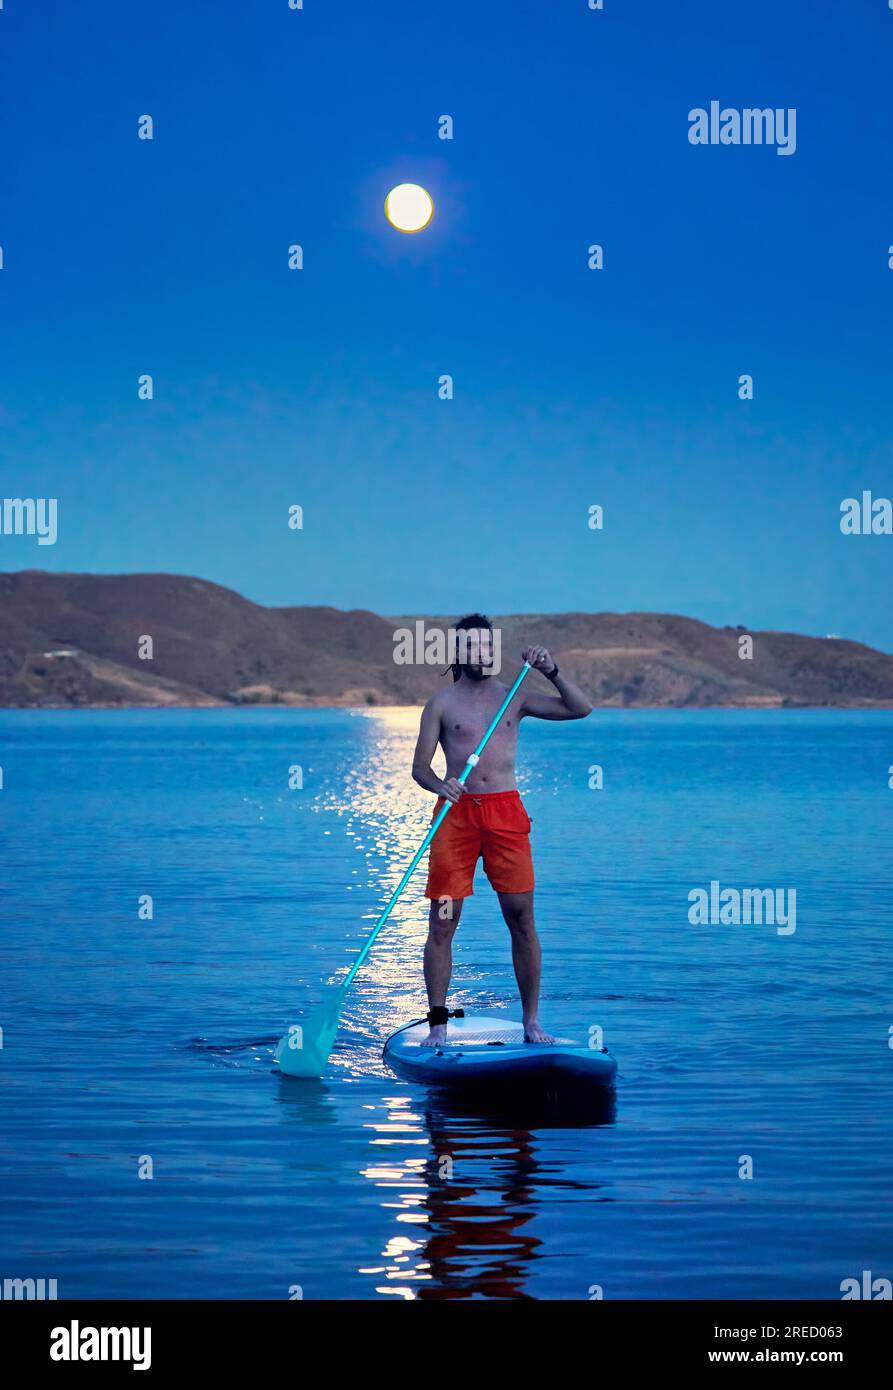 Homme surfeur en chemise orange au stand up paddle boards SUP en silhouette contre la pleine lune chemin lunaire près de l'île au lac Kapchagay au Kazakhstan. Banque D'Images